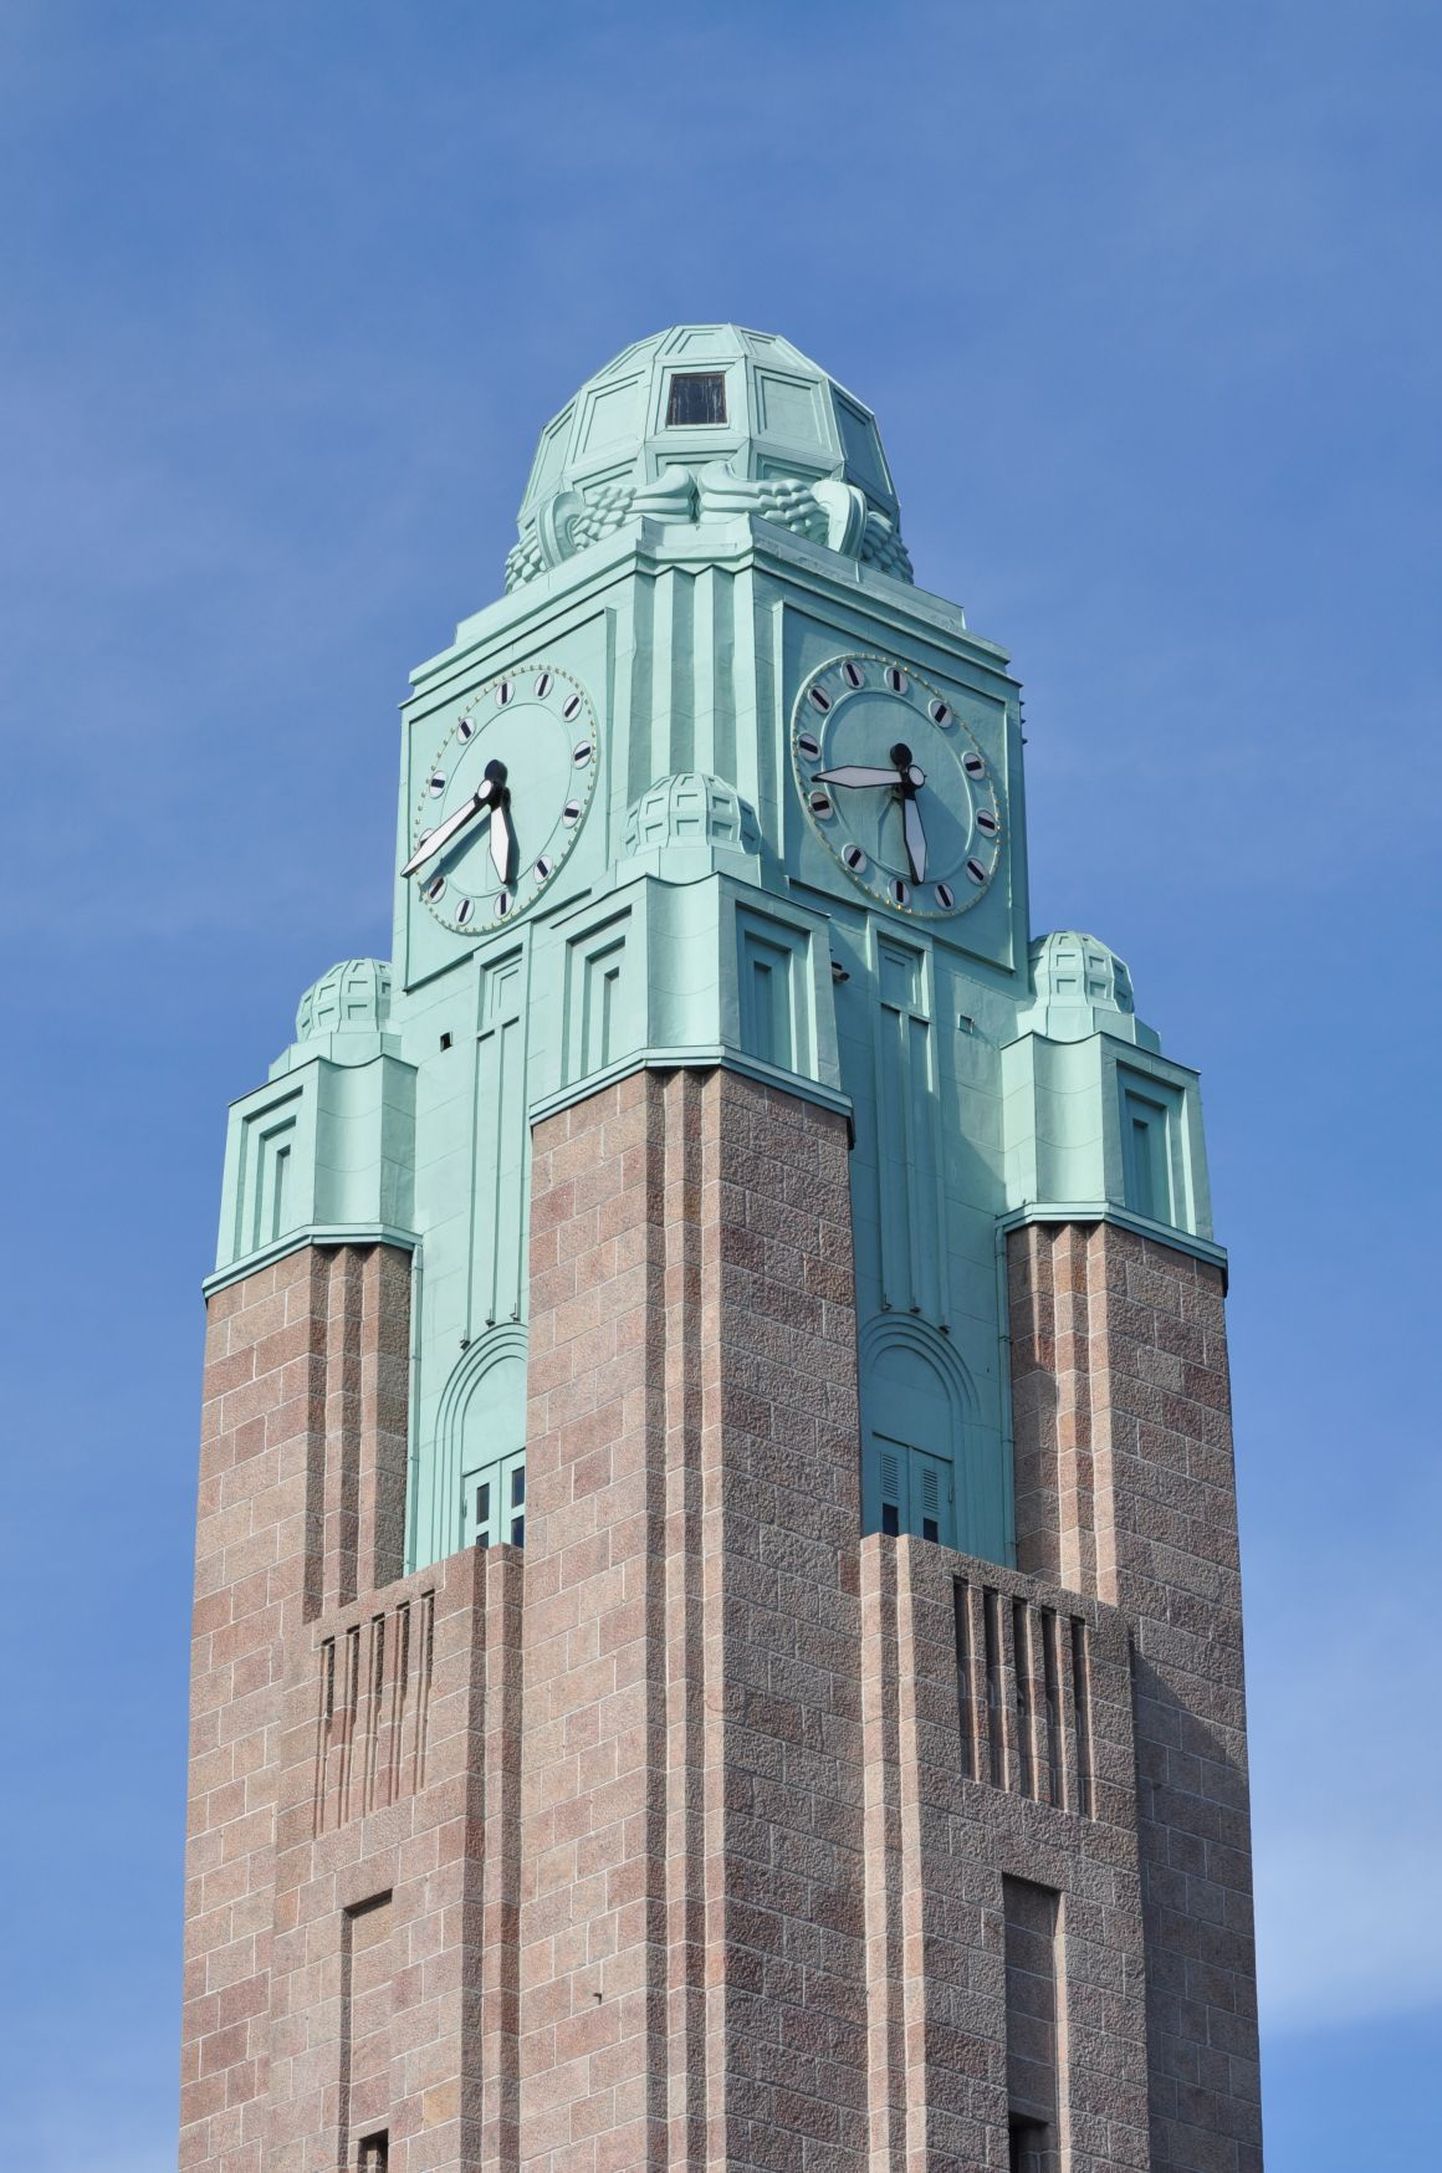 Helsingi pearaudteejaama kellatorn.